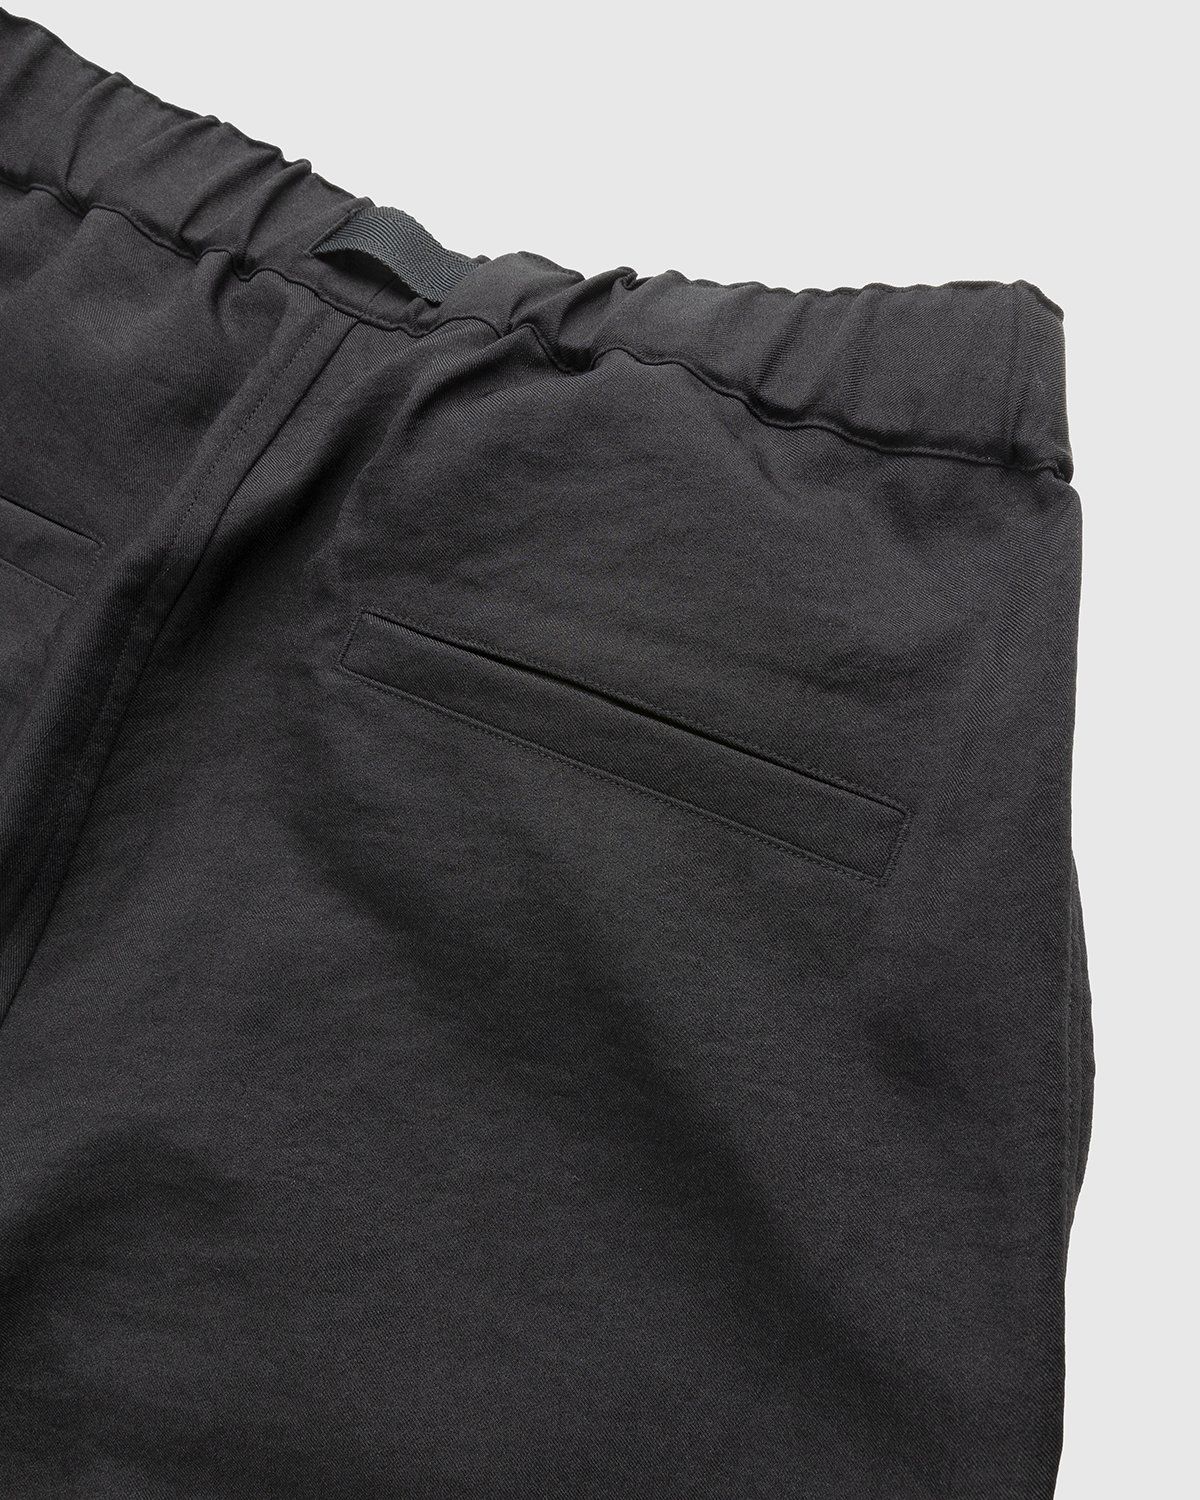 Y-3 – Classic Sport Uniform Cargo Pants Black - Pants - Black - Image 4